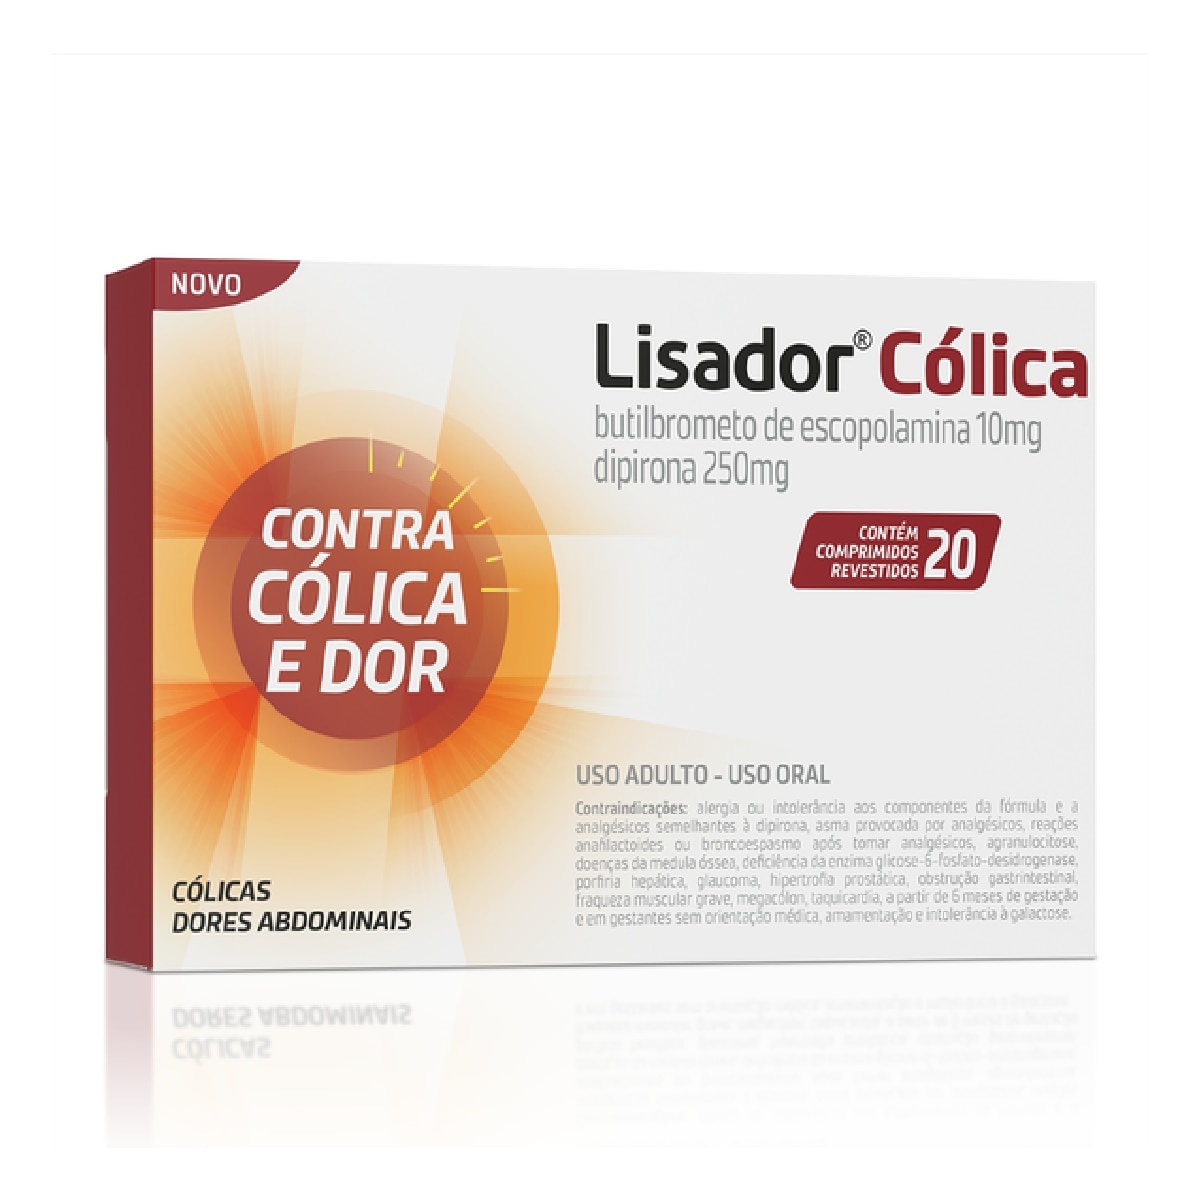 Lisador Colica 10mg + 250mg 20 Comprimidos Revestidos